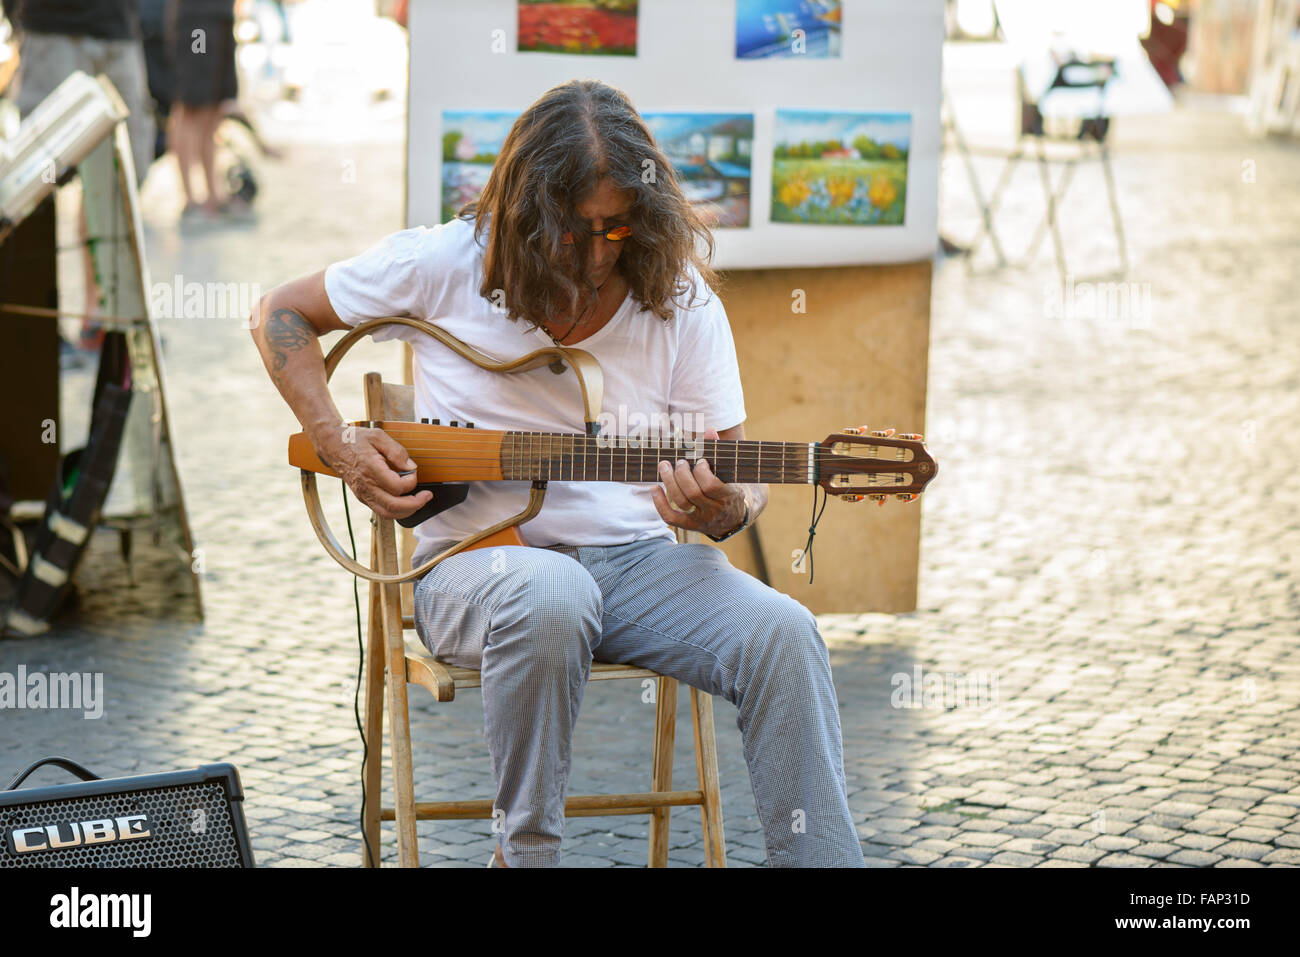 Rome, Italie - 22 août 2015 : la célèbre Place Navona un artiste de rue man playing guitar Banque D'Images